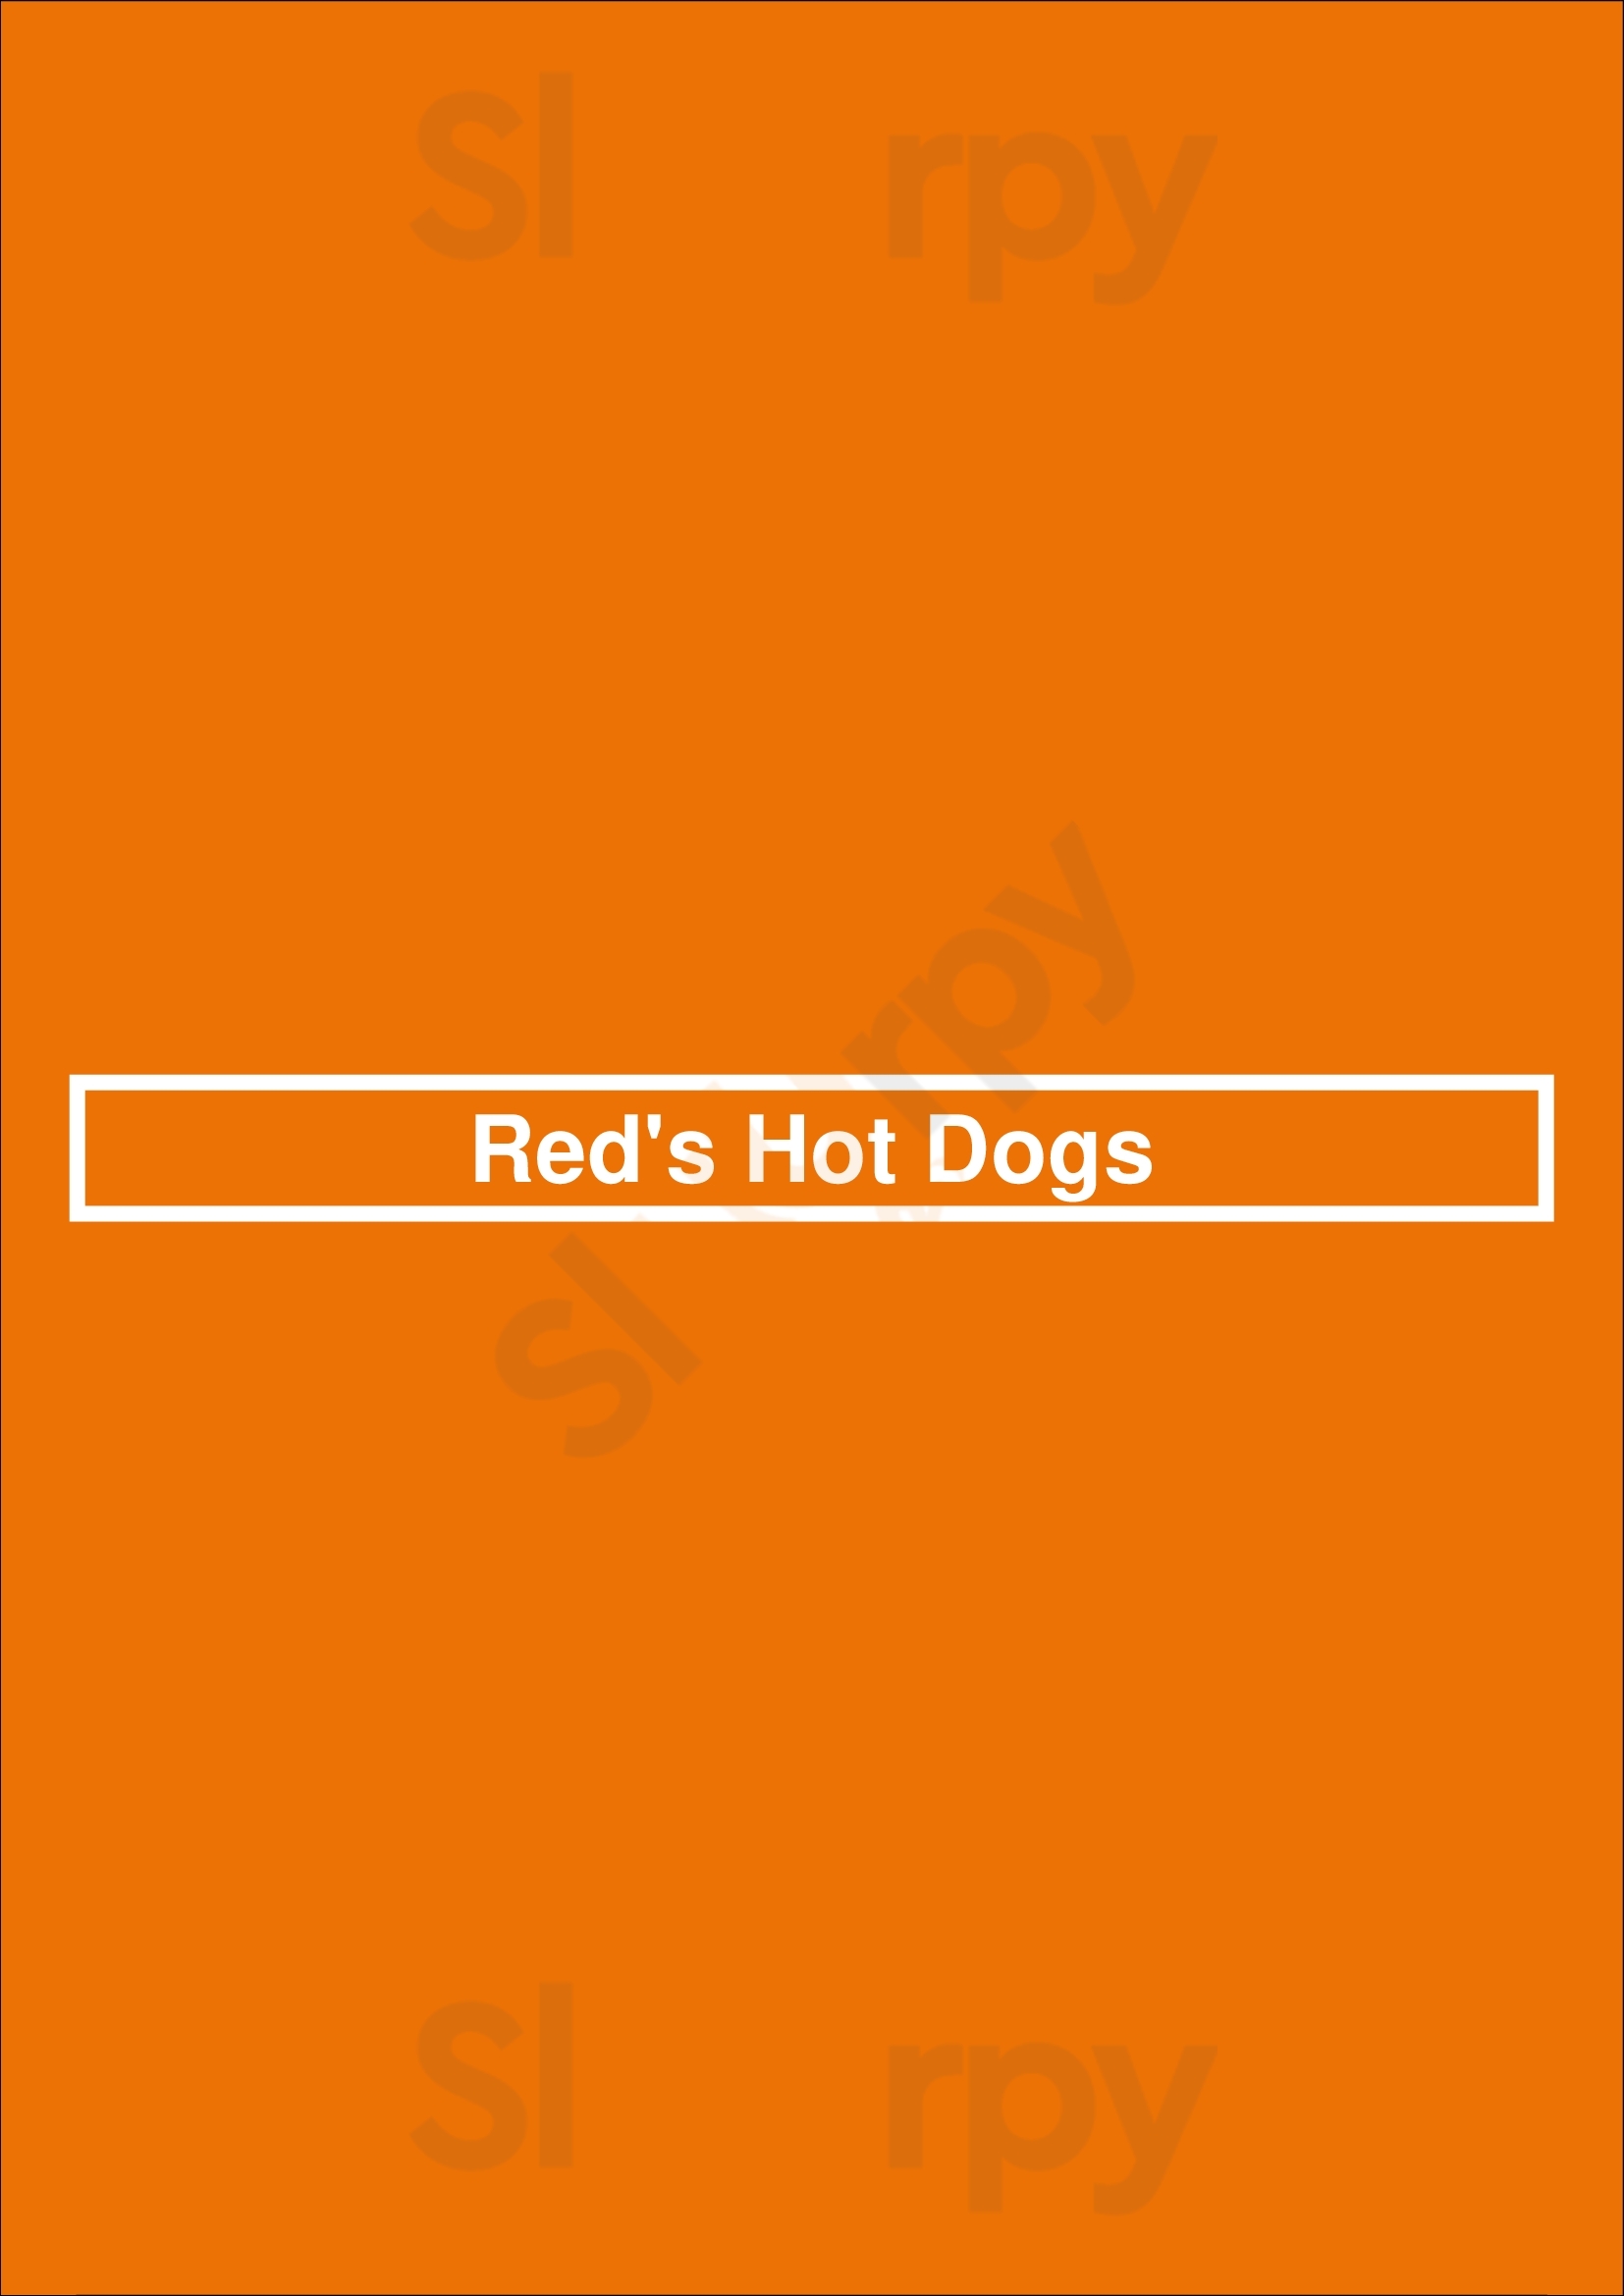 Red's Hot Dogs East Aurora Menu - 1